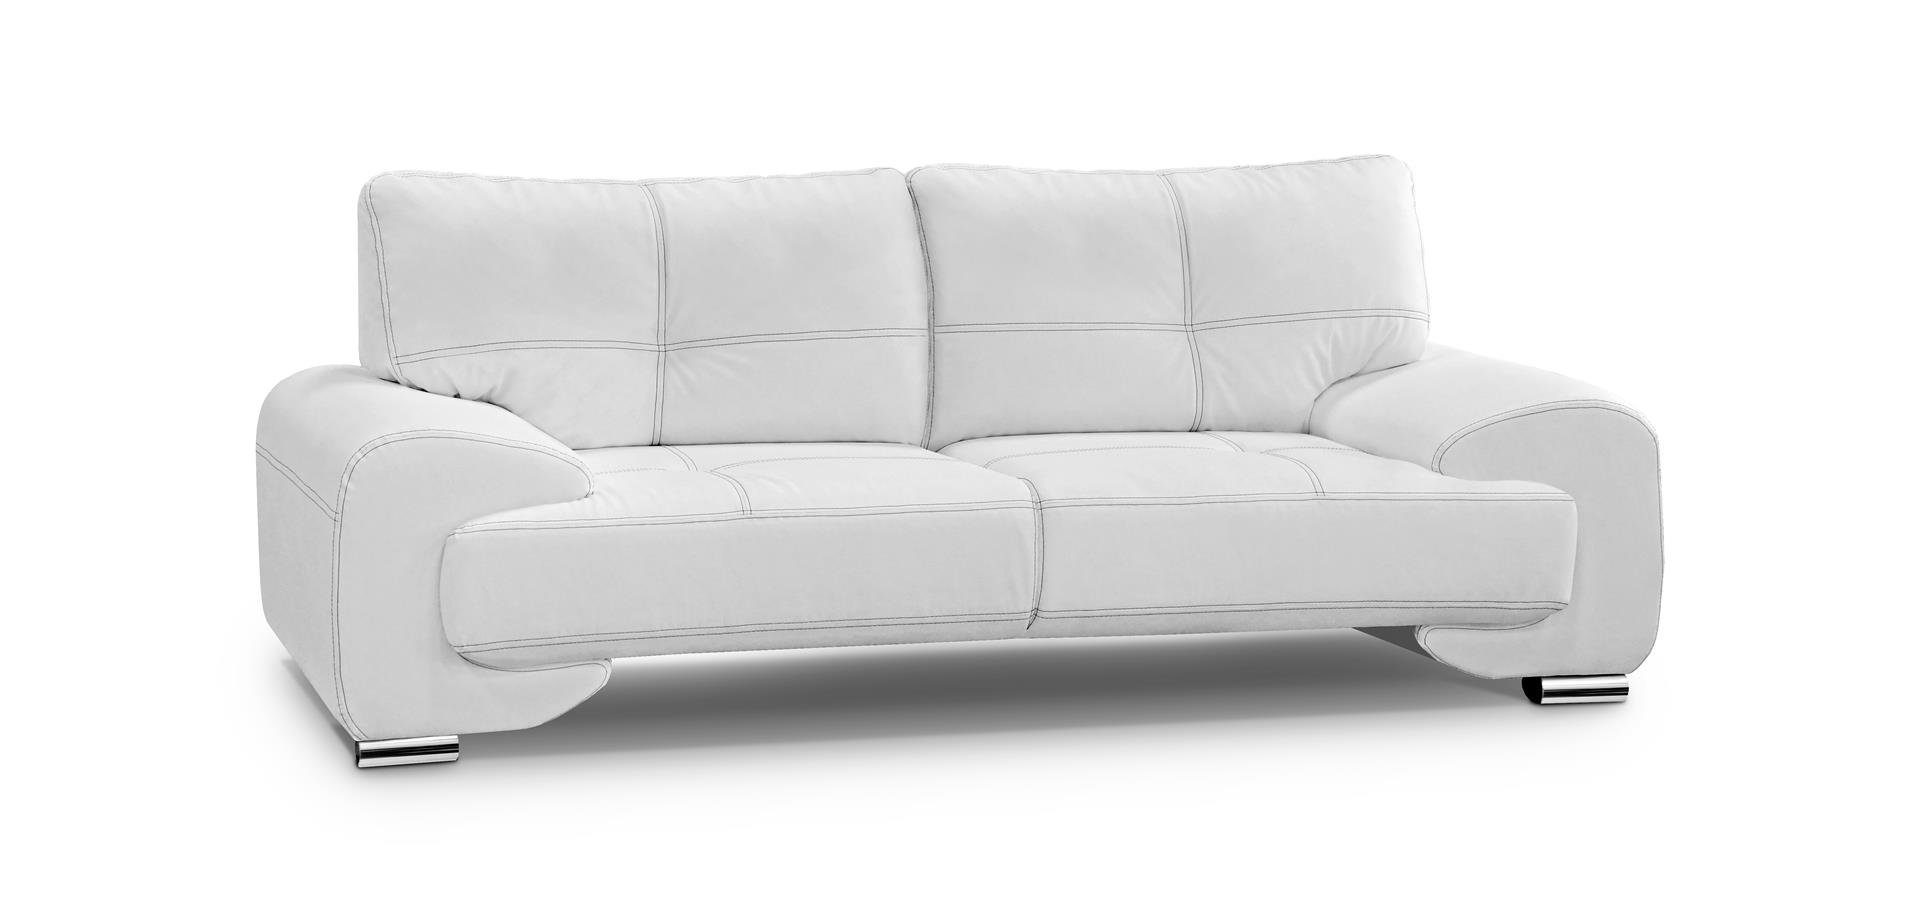 Beautysofa Sofa Dreisitzer Sofa Couch OMEGA Neu Weiß (dolaro 511)